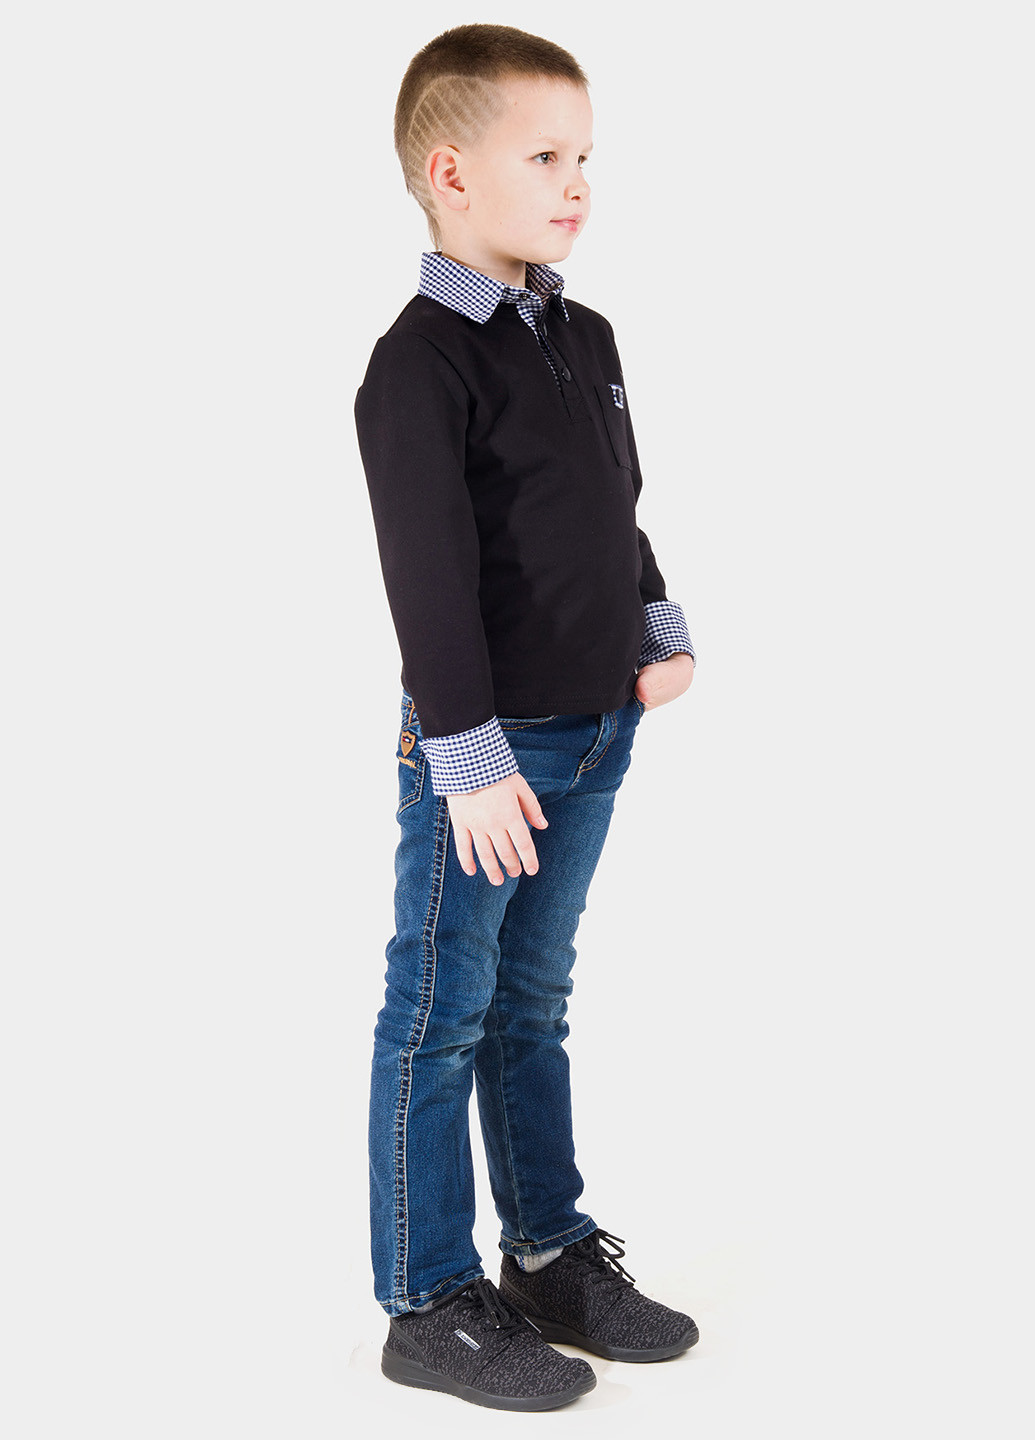 Черная детская футболка-поло для мальчика Lola Fashion однотонная